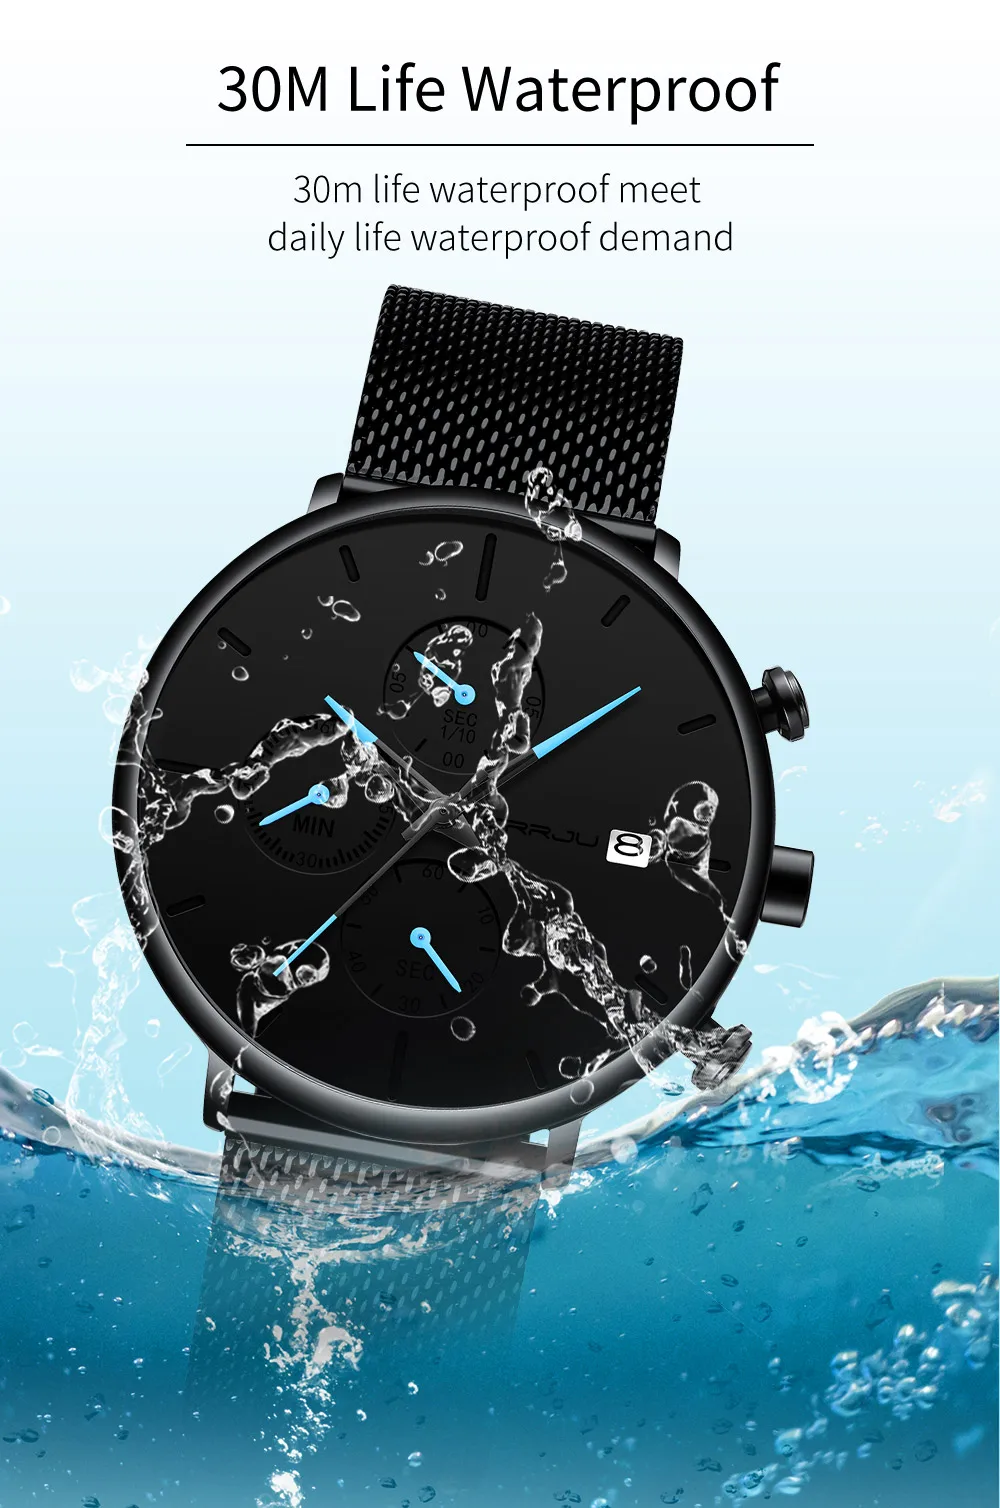 CRRJU часы новые спортивные военные мужские часы Топ брендовые роскошные черные наручные часы со стальным ремешком Relogio Masculino montre homme